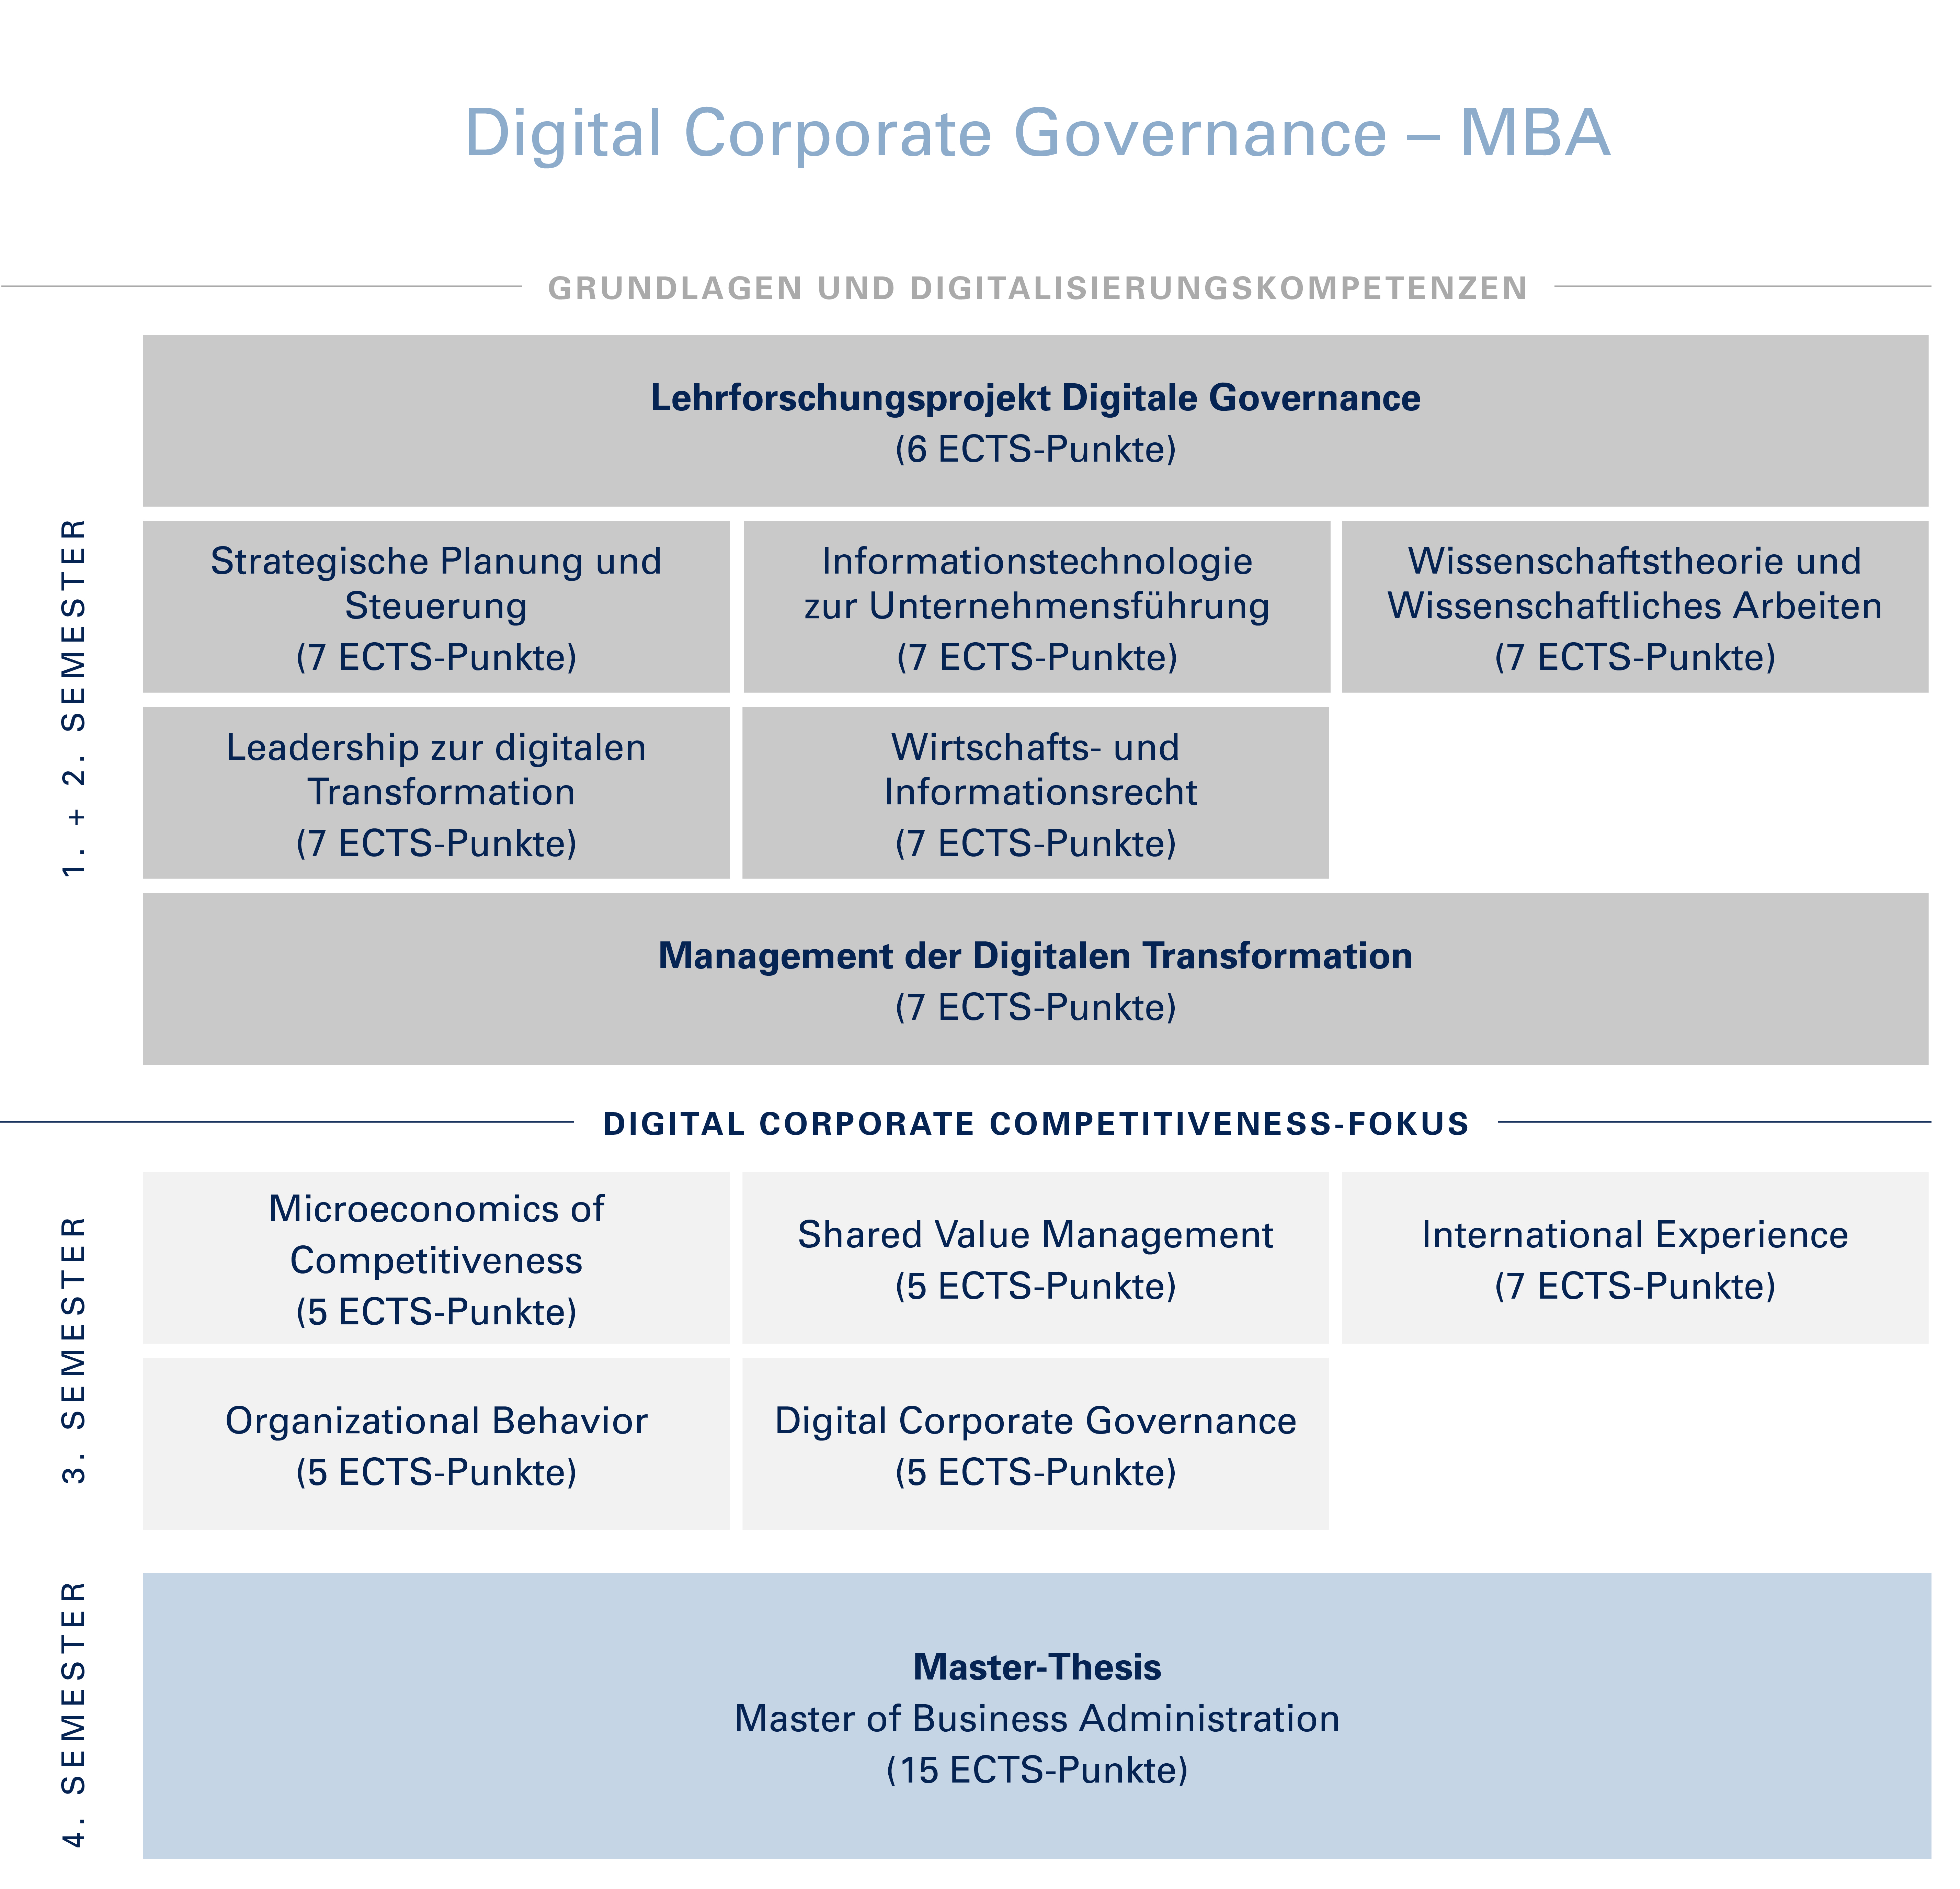 Aufbau Digital Corporate Governance - MBA - dieser wird nachfolgend noch textlich beschrieben.